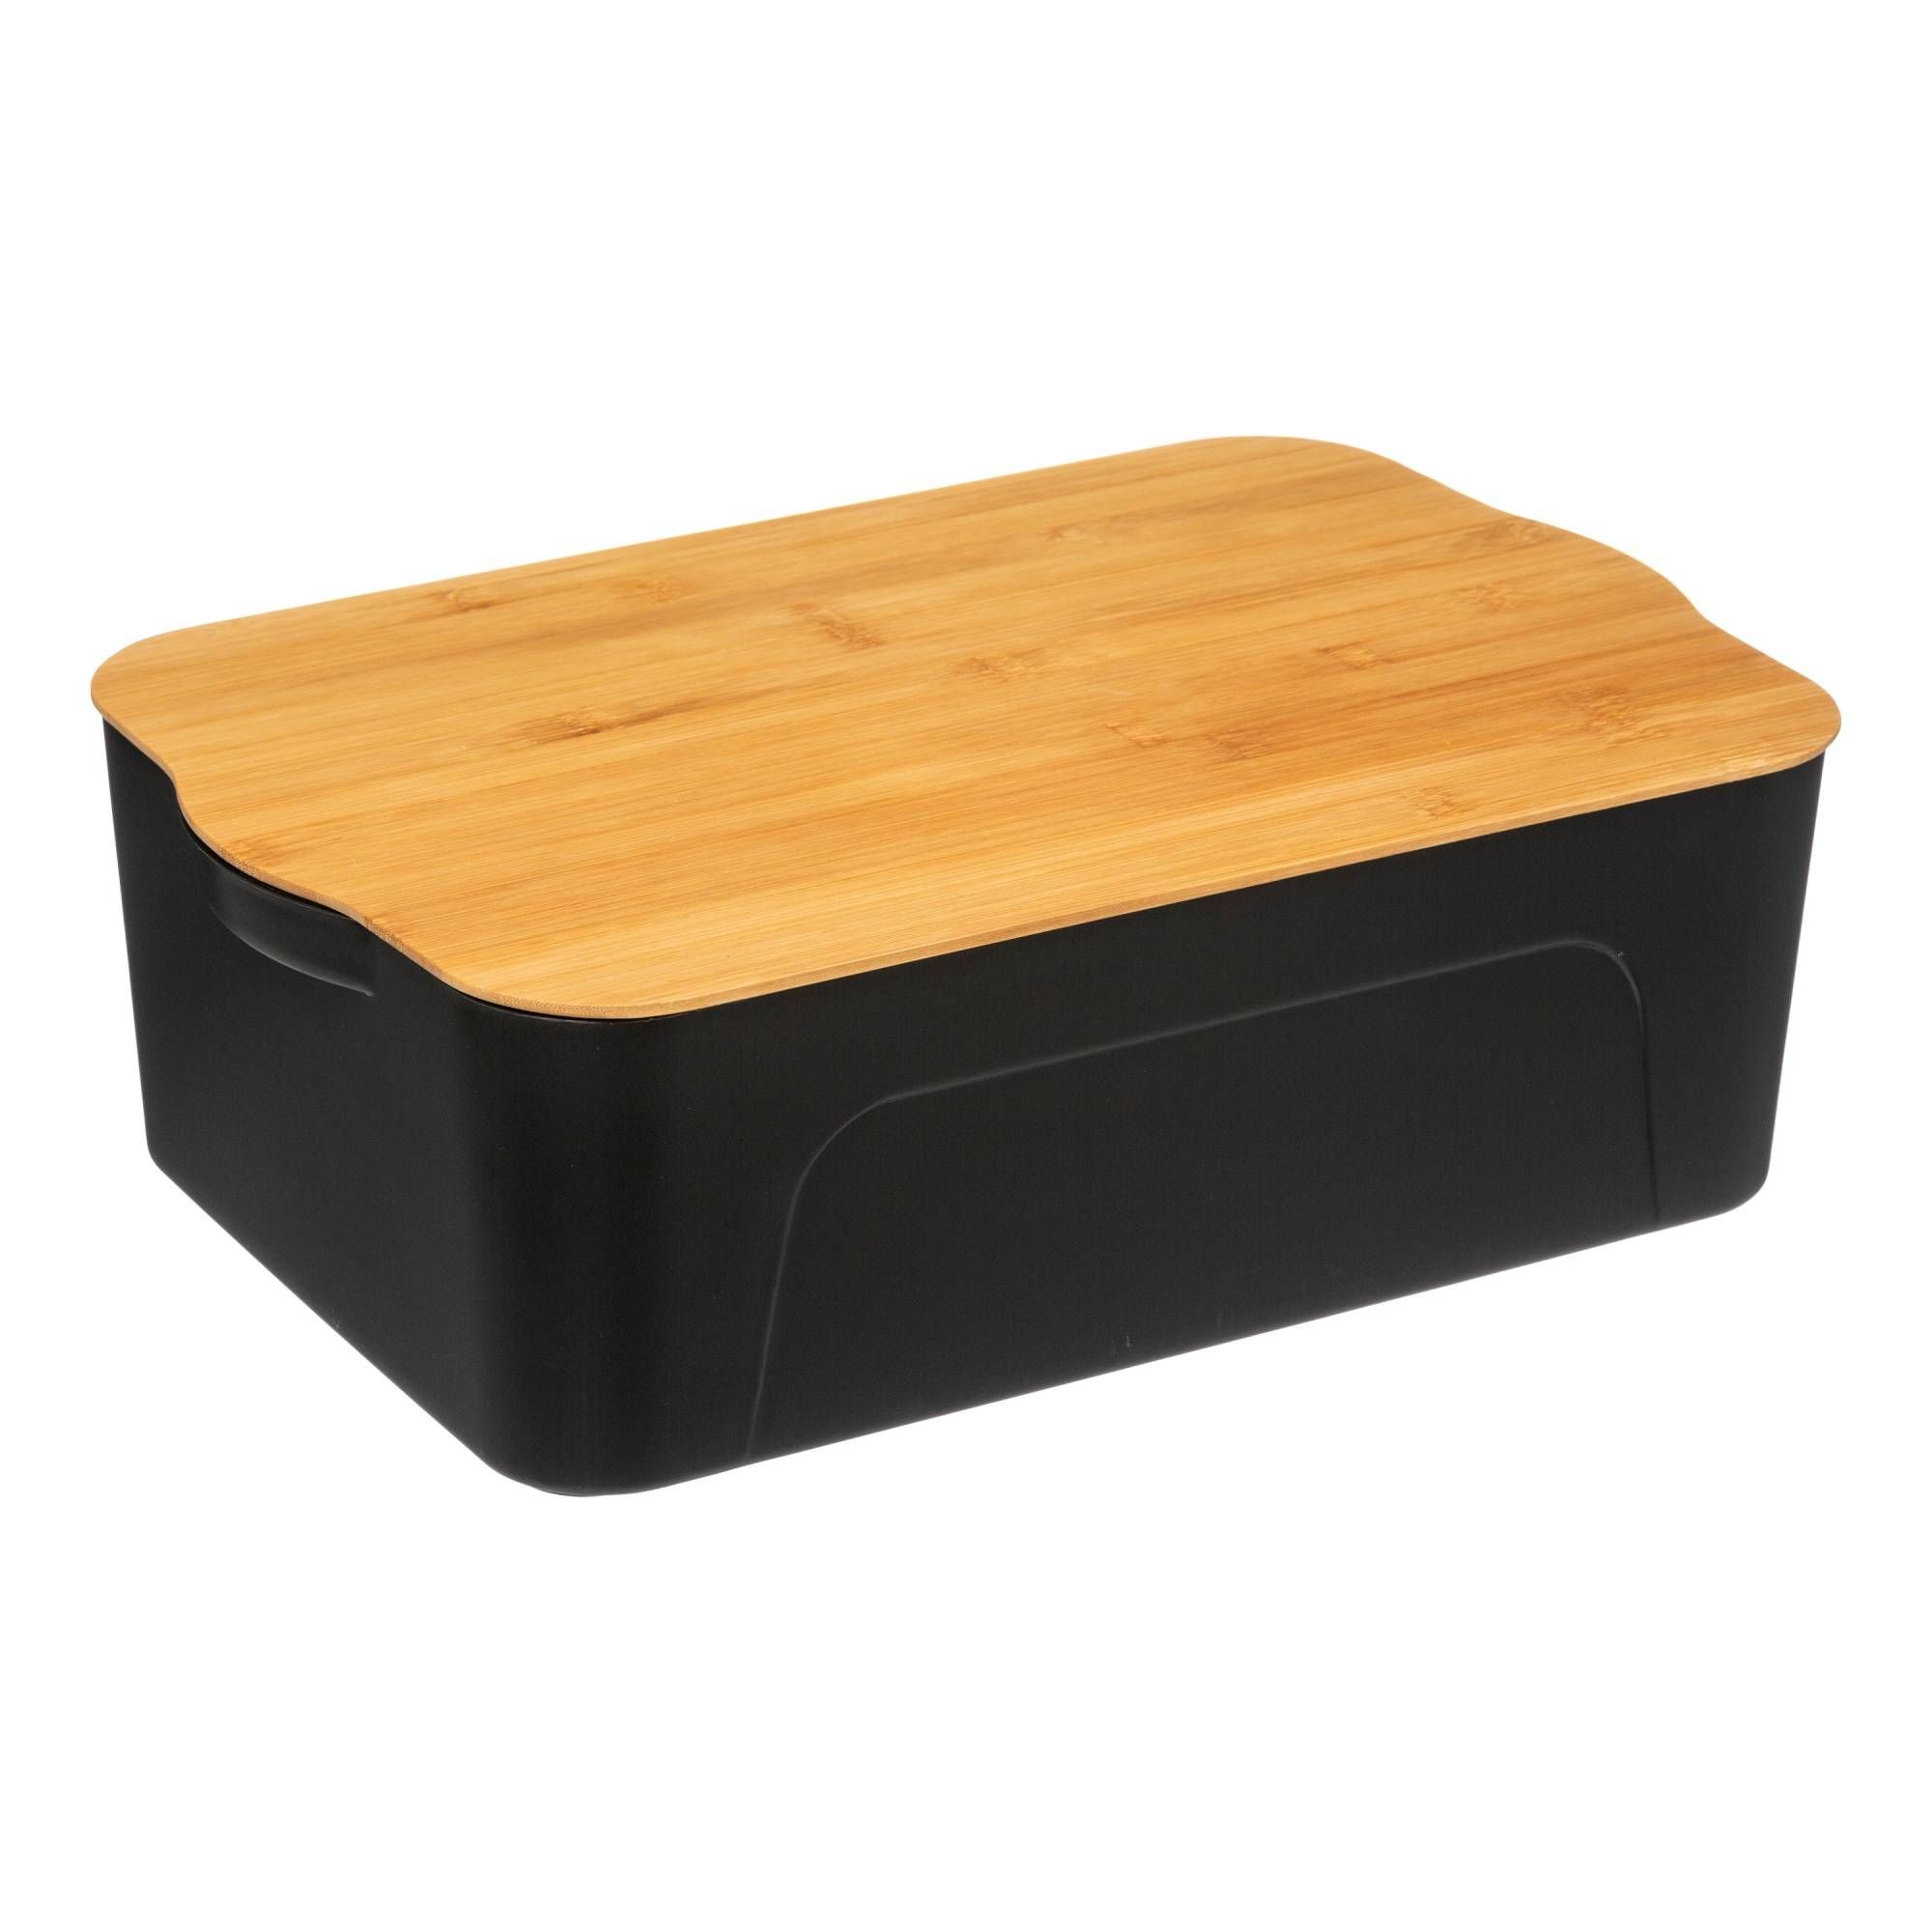 5five Simply Smart Plastový úložný box s bambusovým víkem, 13,5 L, černý - EDAXO.CZ s.r.o.